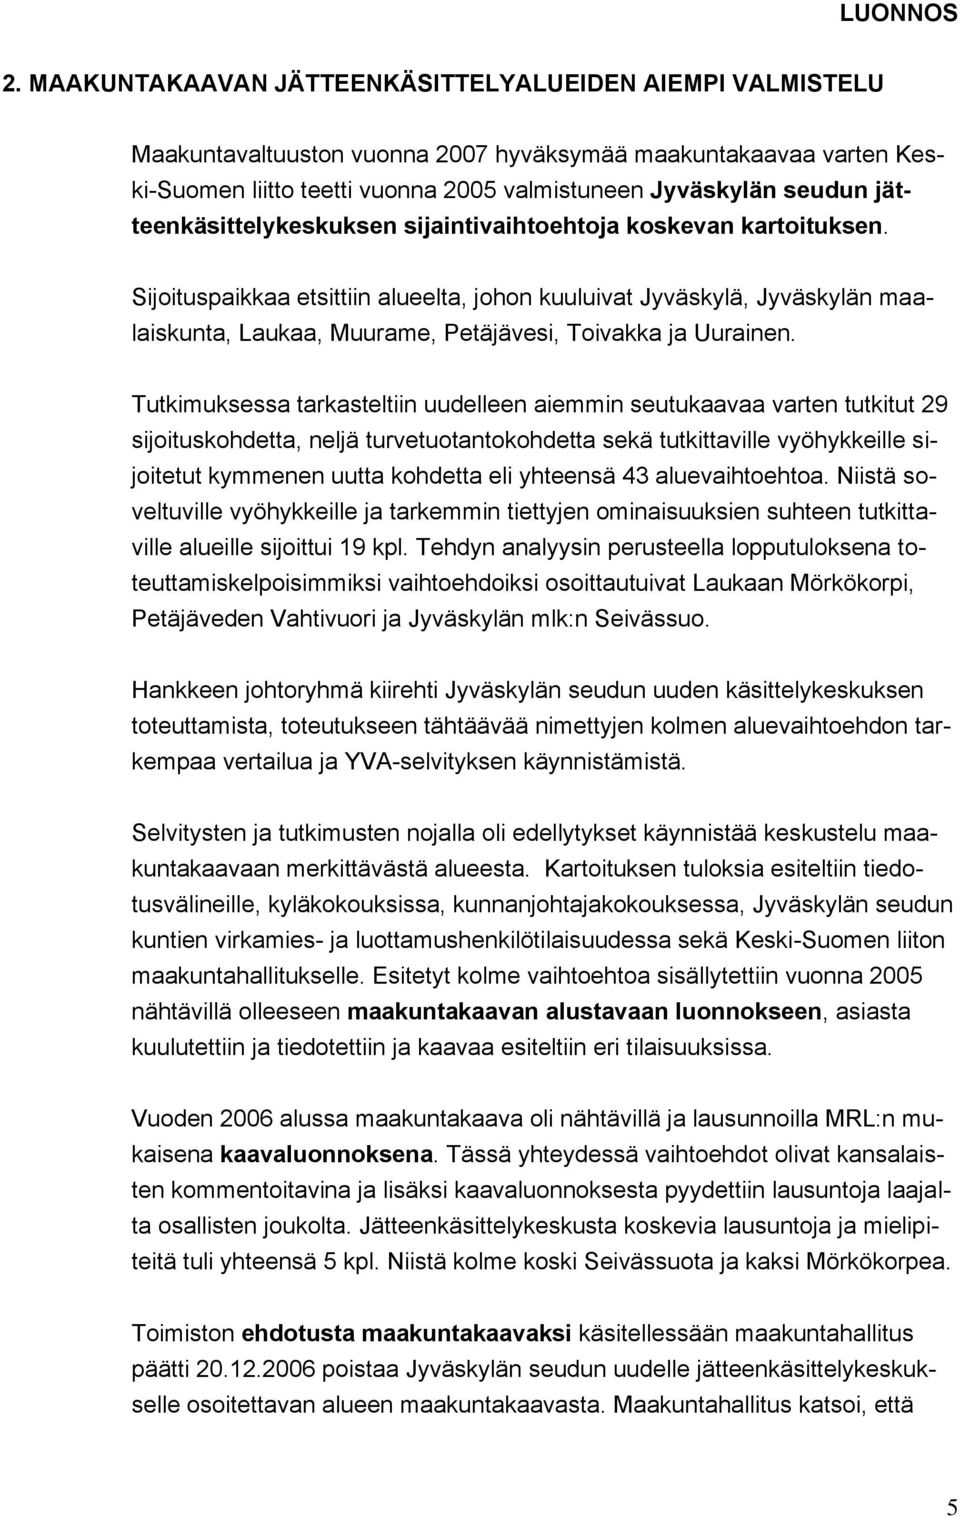 Sijoituspaikkaa etsittiin alueelta, johon kuuluivat Jyväskylä, Jyväskylän maalaiskunta, Laukaa, Muurame, Petäjävesi, Toivakka ja Uurainen.